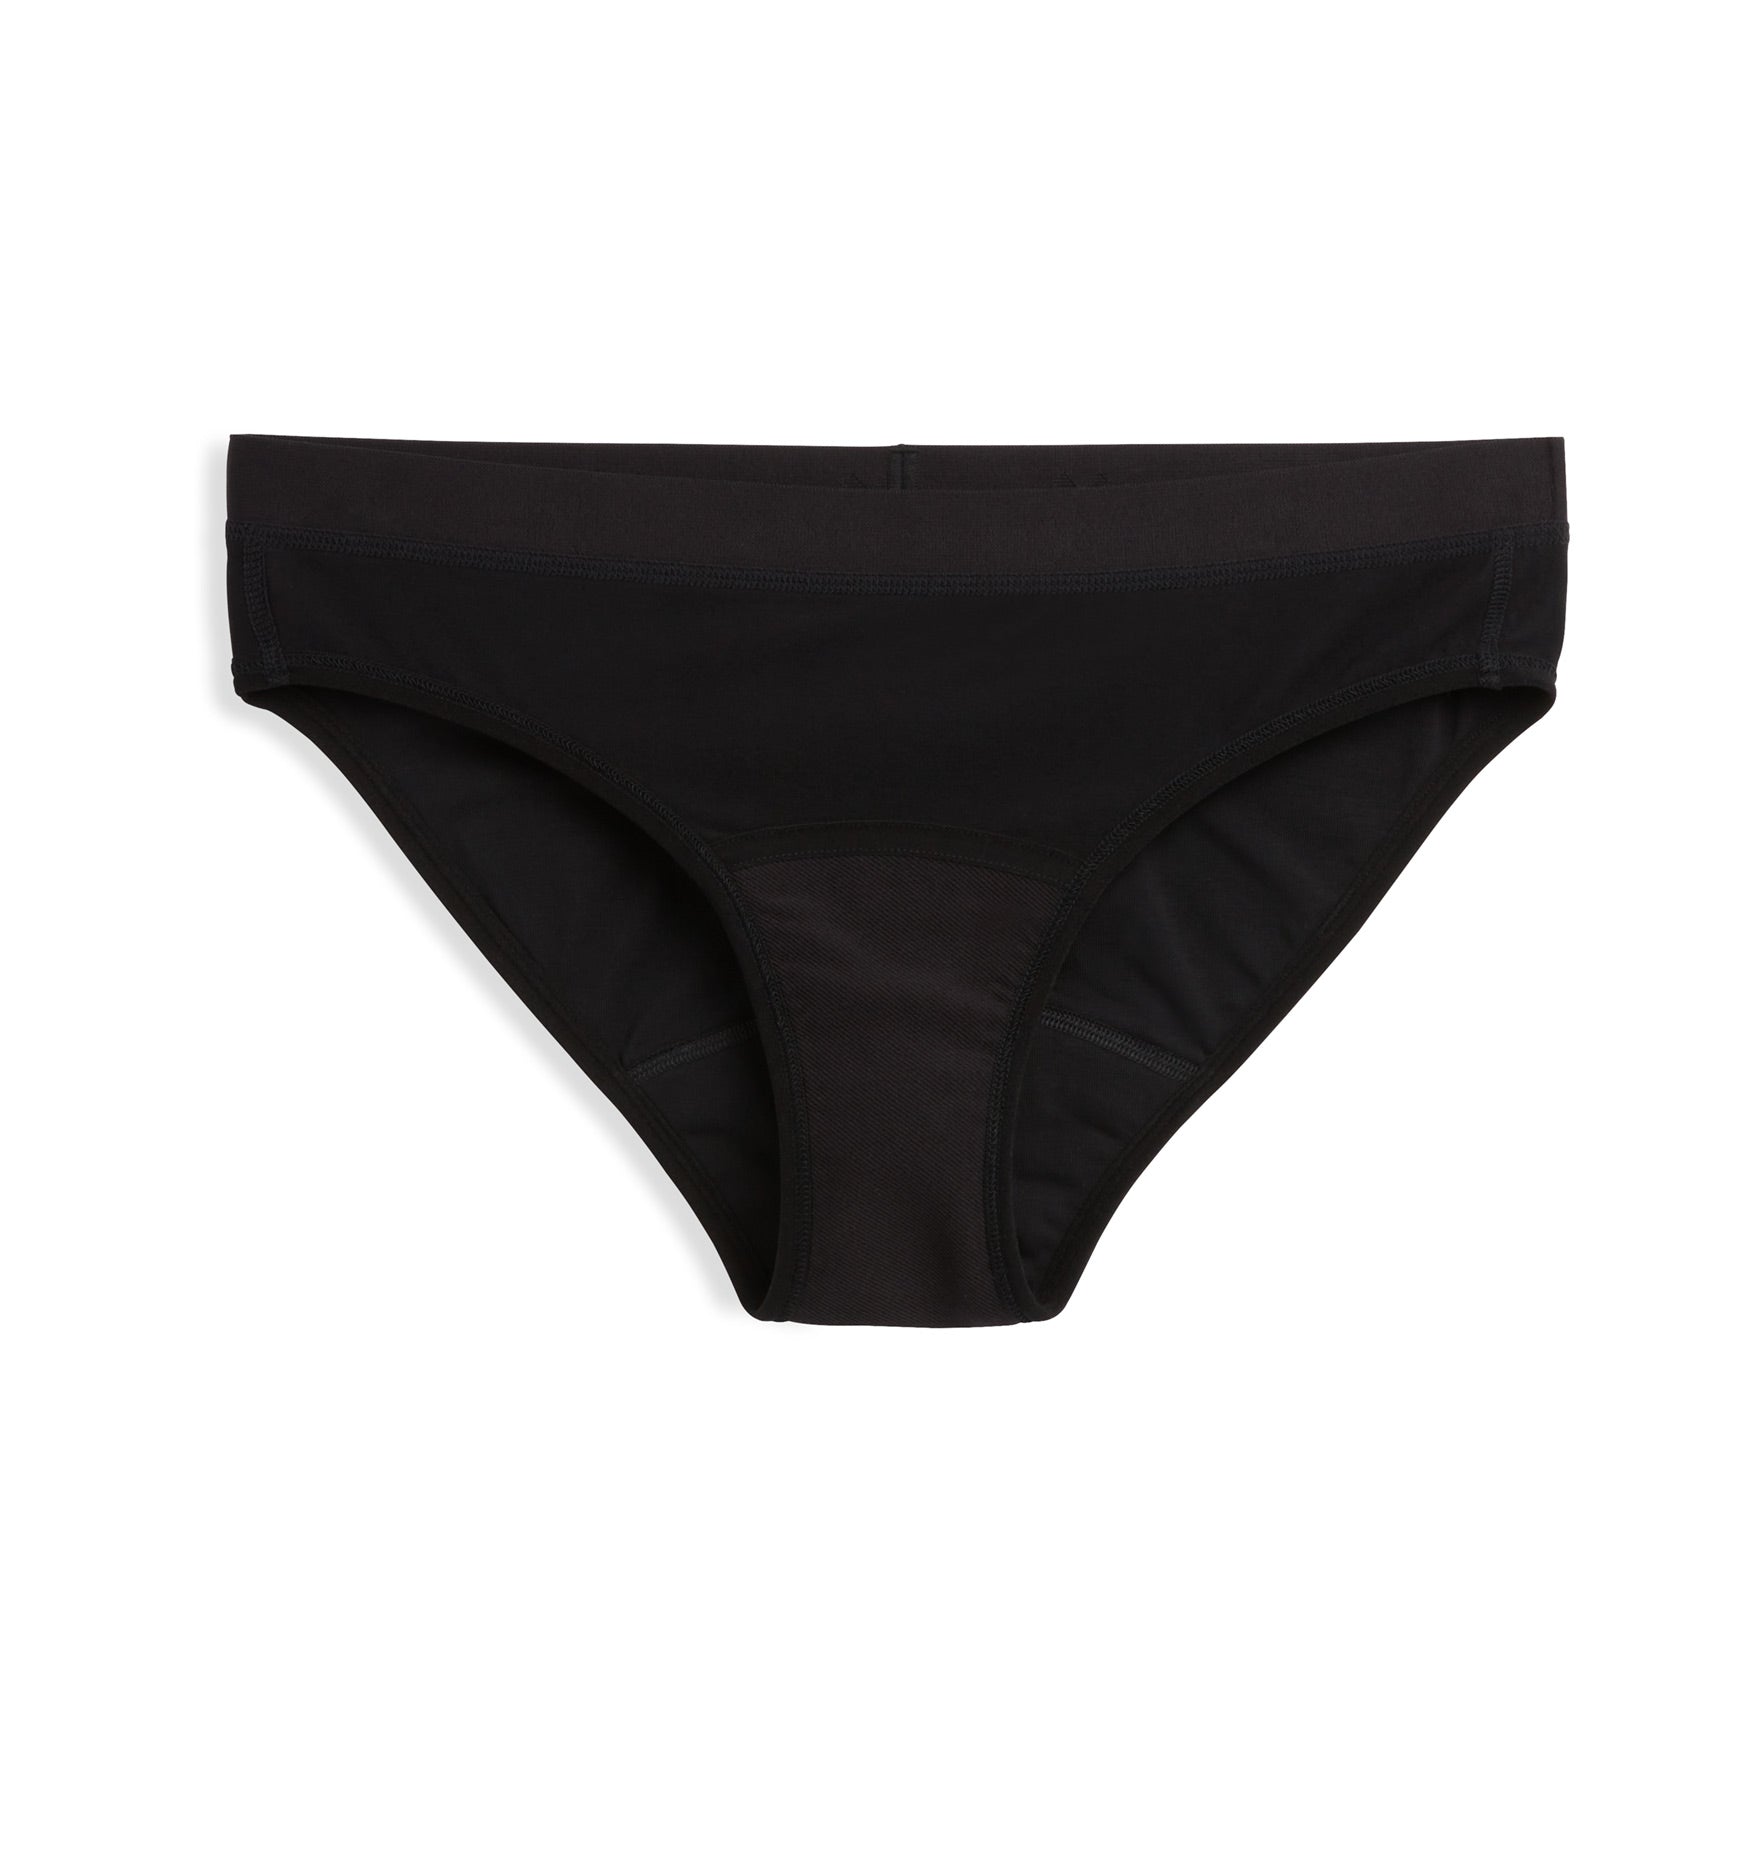 U by Kotex Thinx Period Underwear Black Bikini